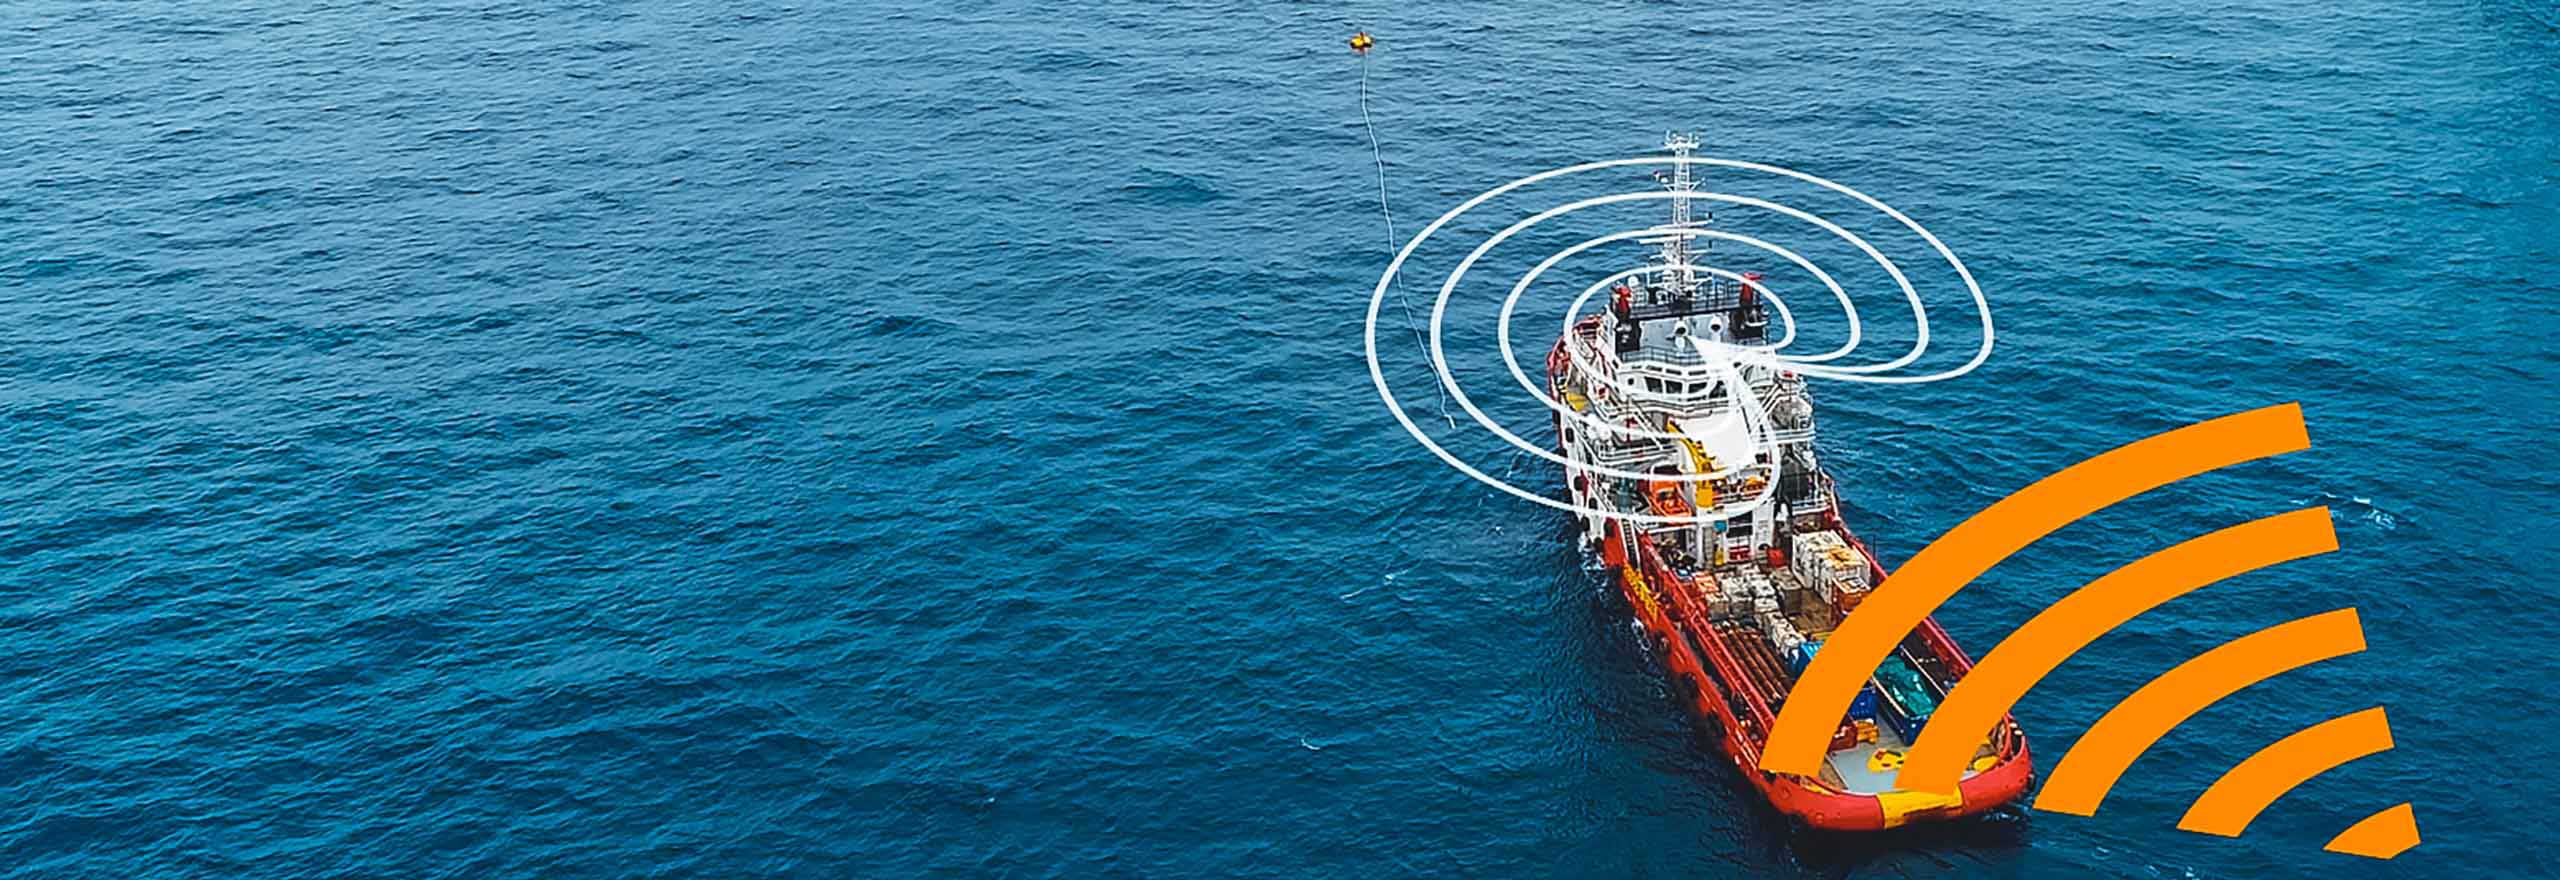 Wie die Anti-Jam-Technologie auf einem rot-weißen Schiff in der Mitte des Ozeans in der Nähe einer Bohrinsel auf Störungen reagiert und diese entschärft.